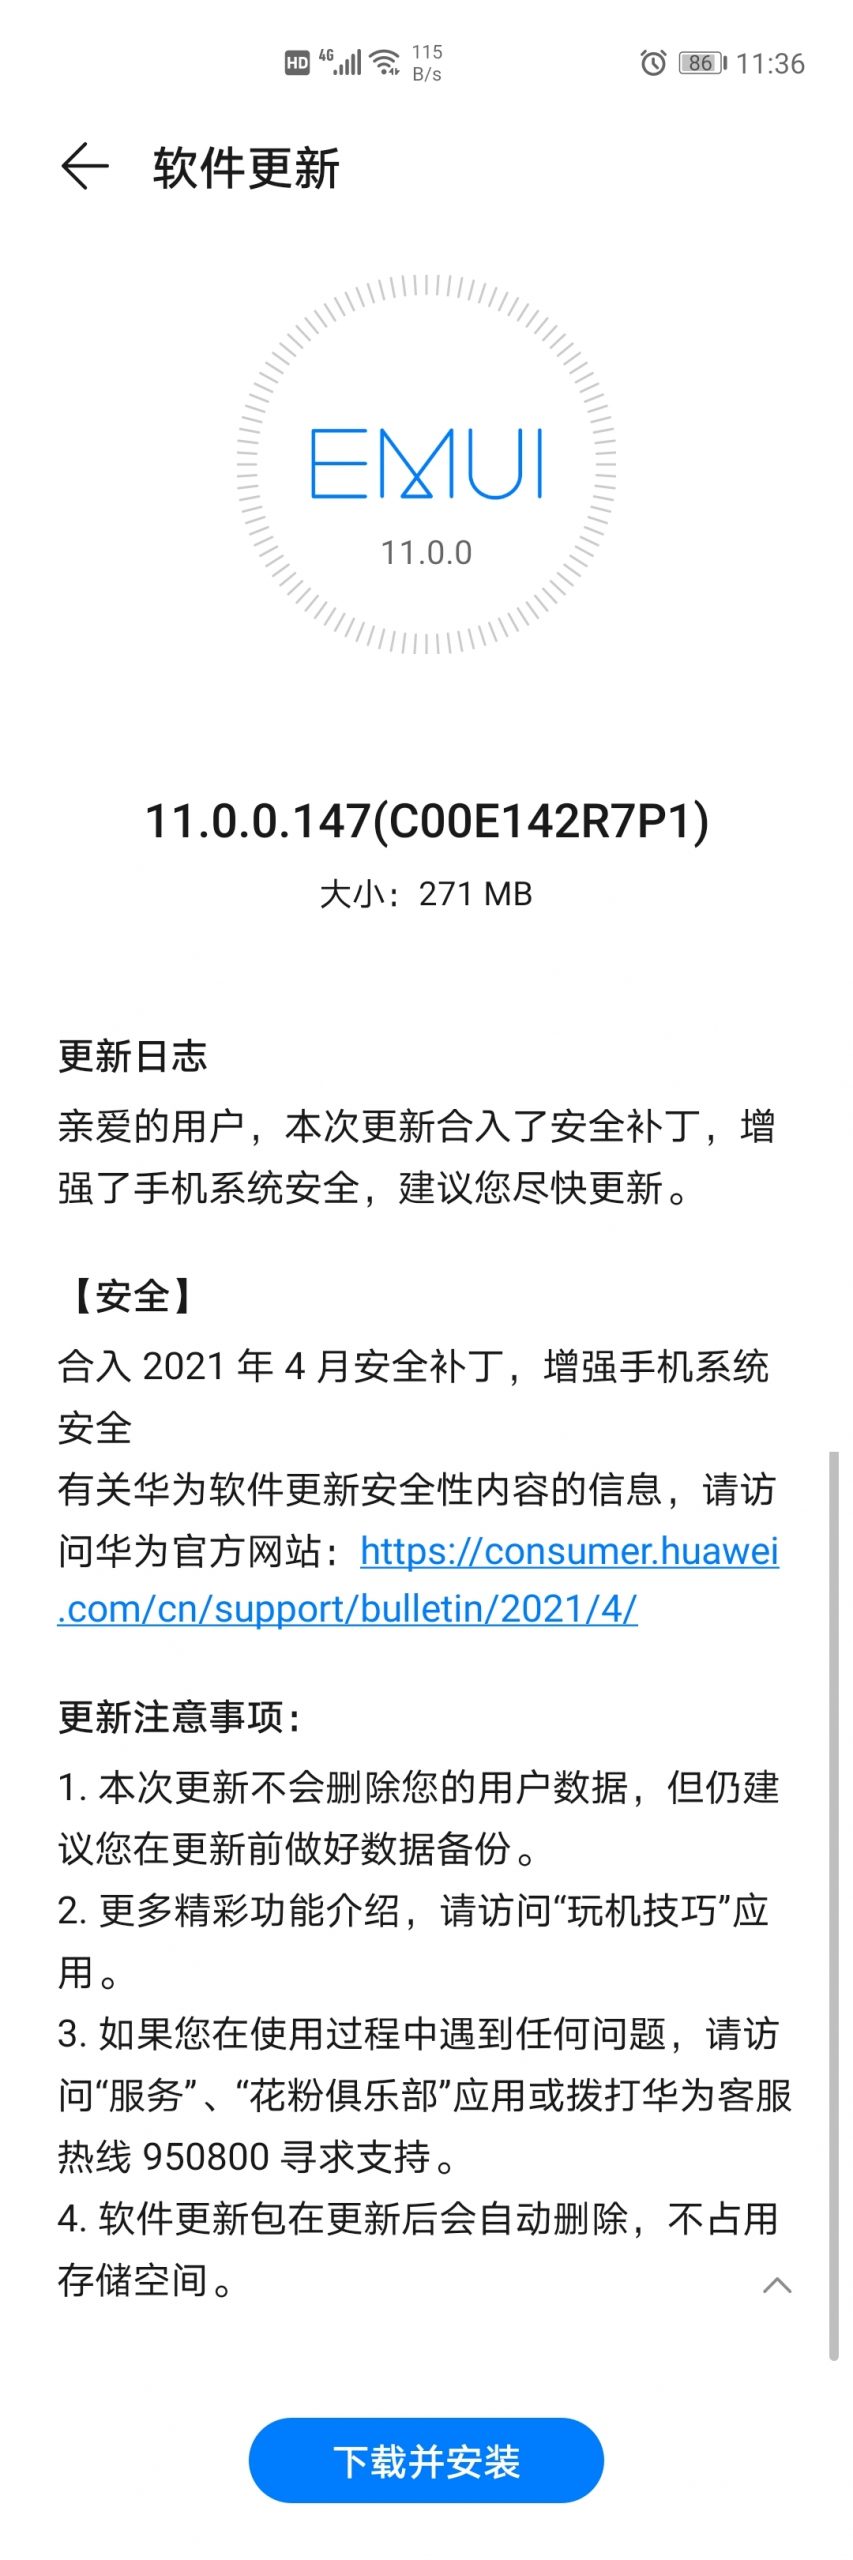 Huawei Nova 7 April 2021 security patch update